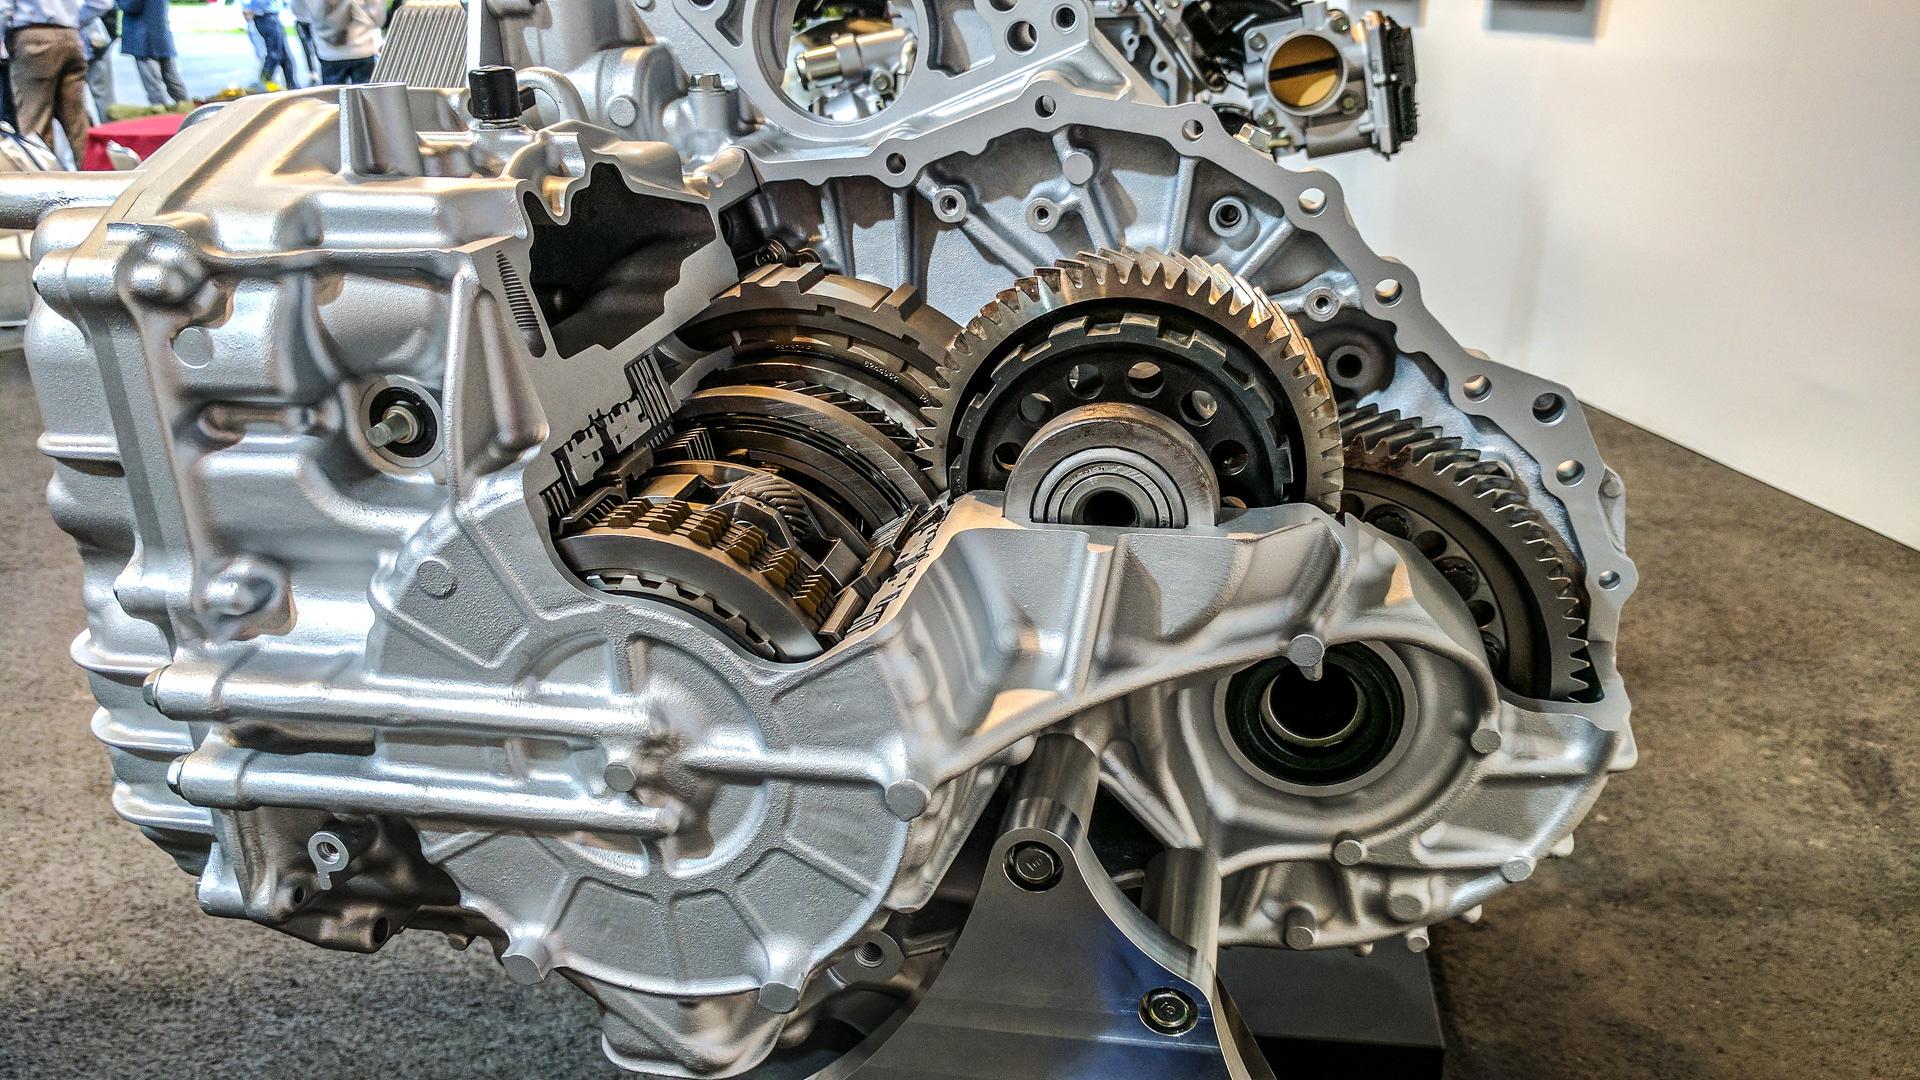 2018 honda accord engine